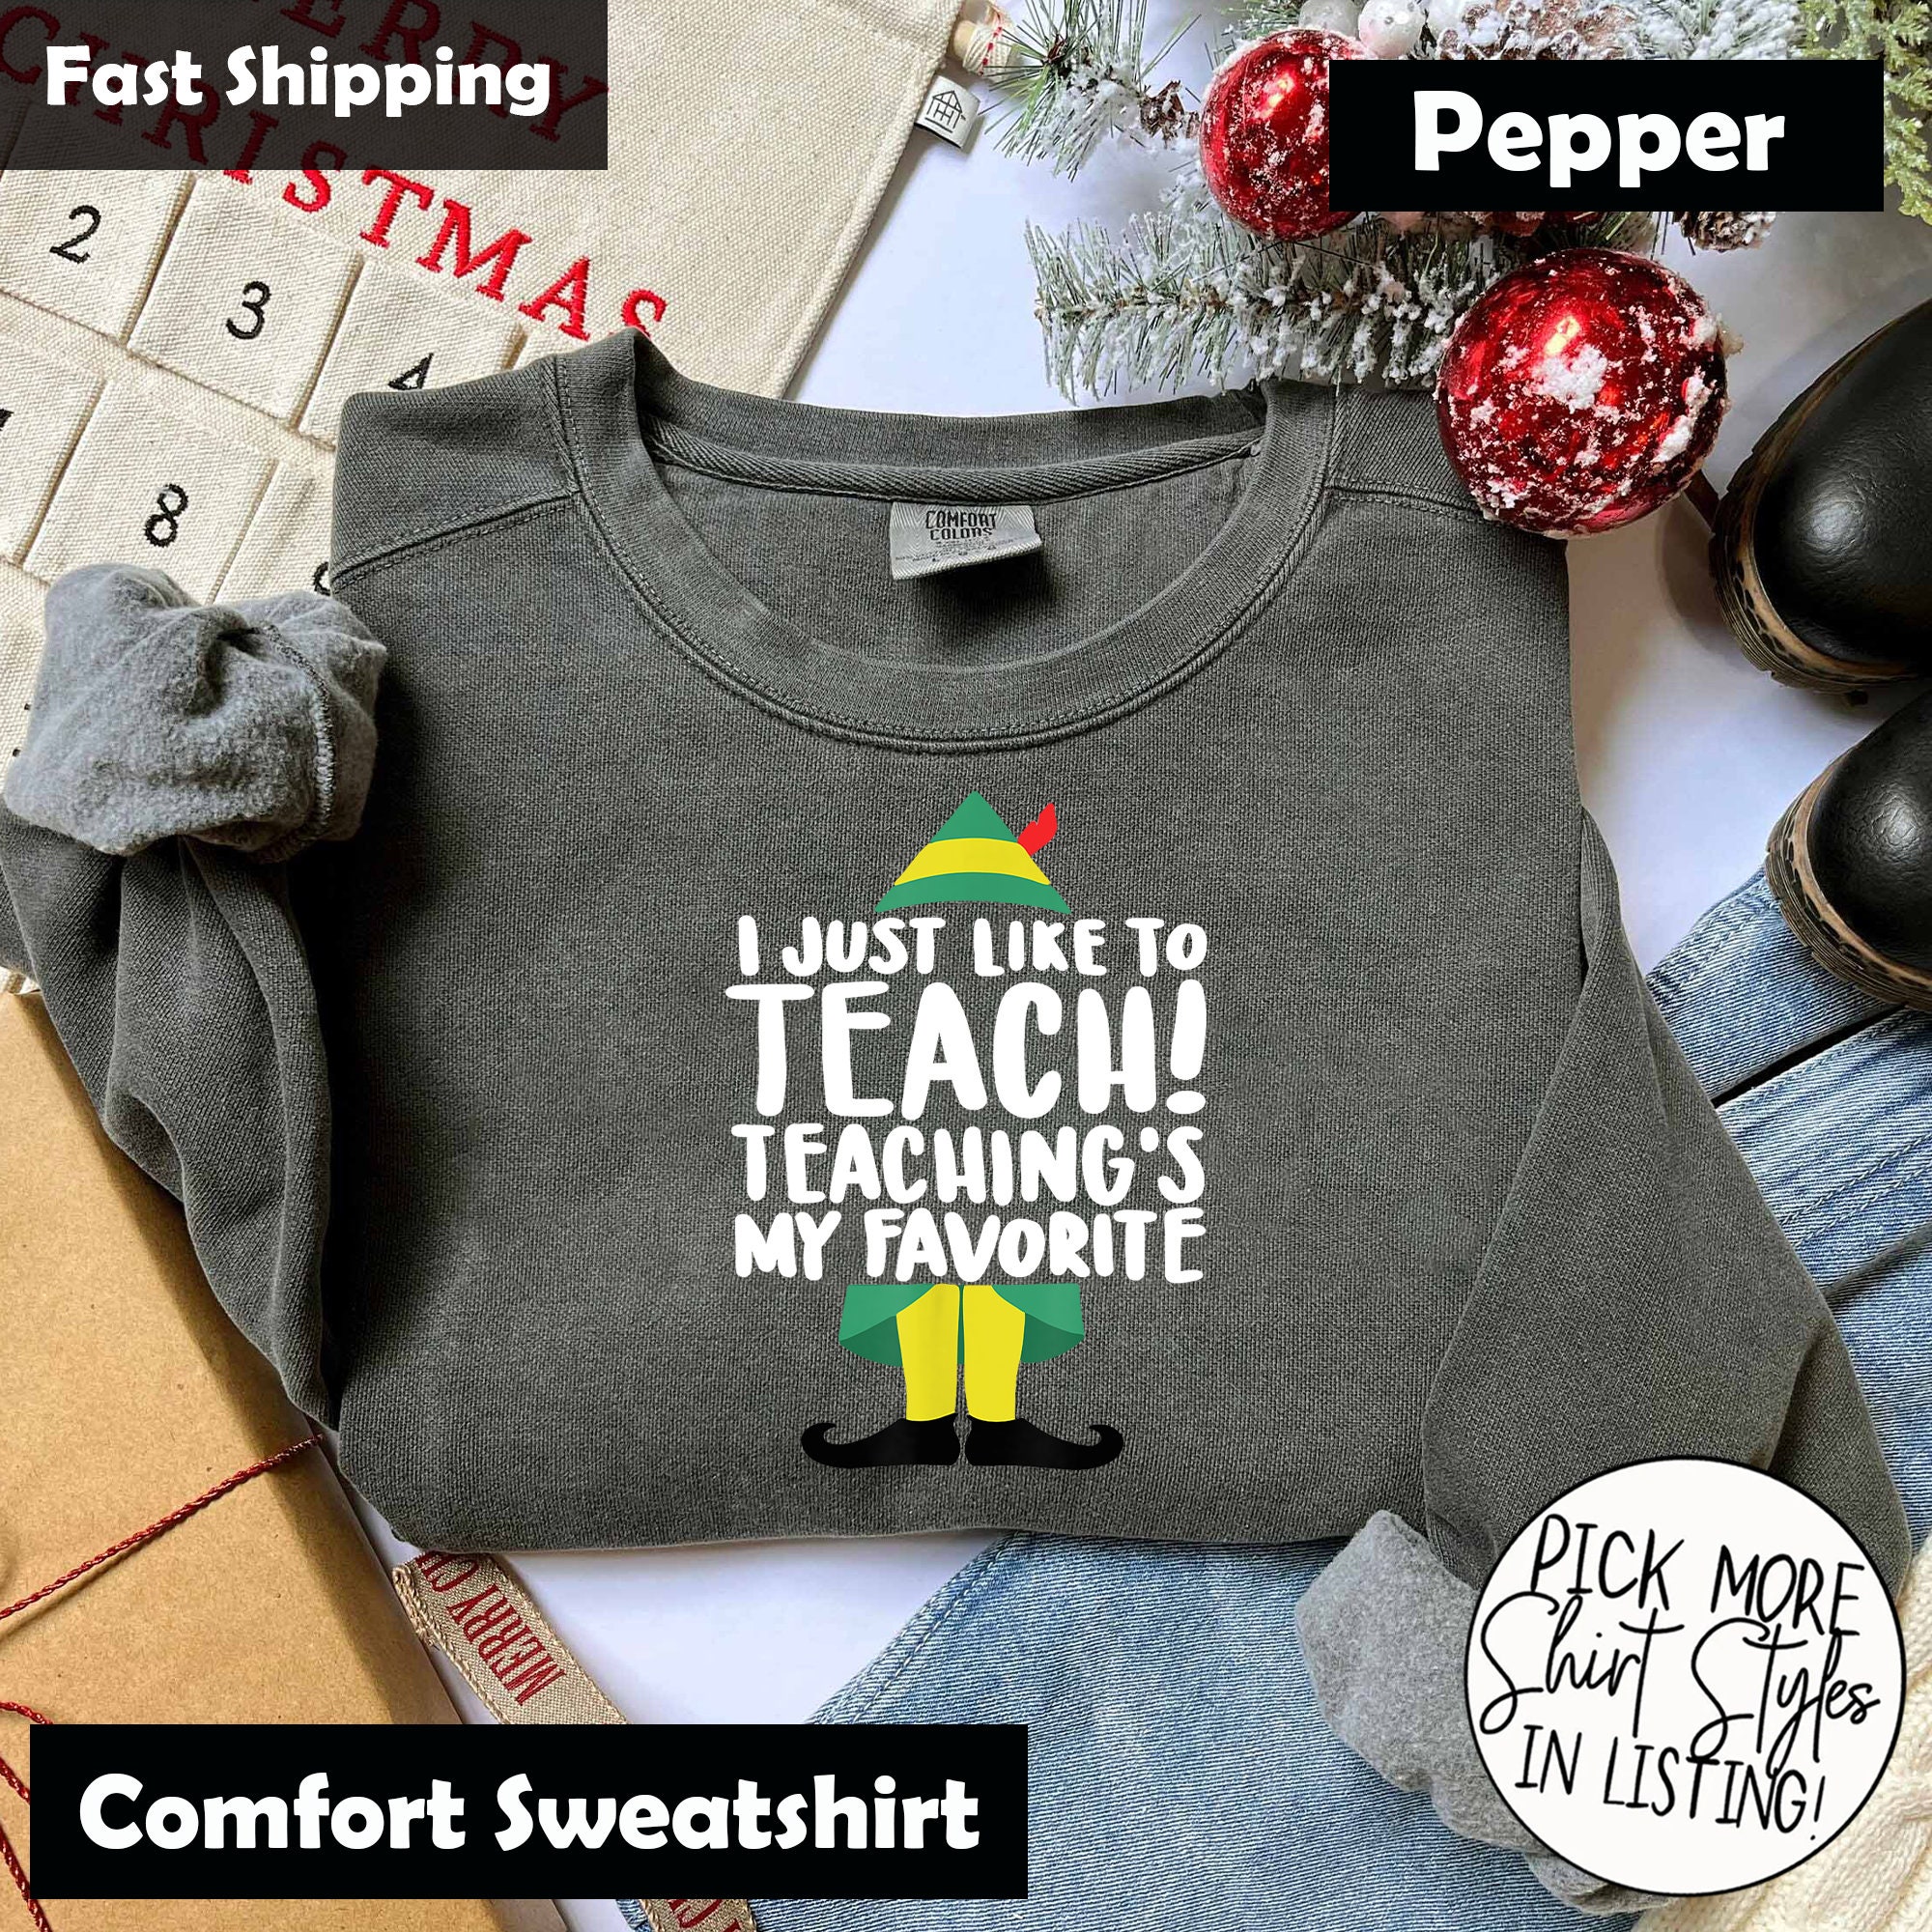 Teaching With Flair, Flair Pens Teacher Shirt, Teacher Tee, - Inspire Uplift